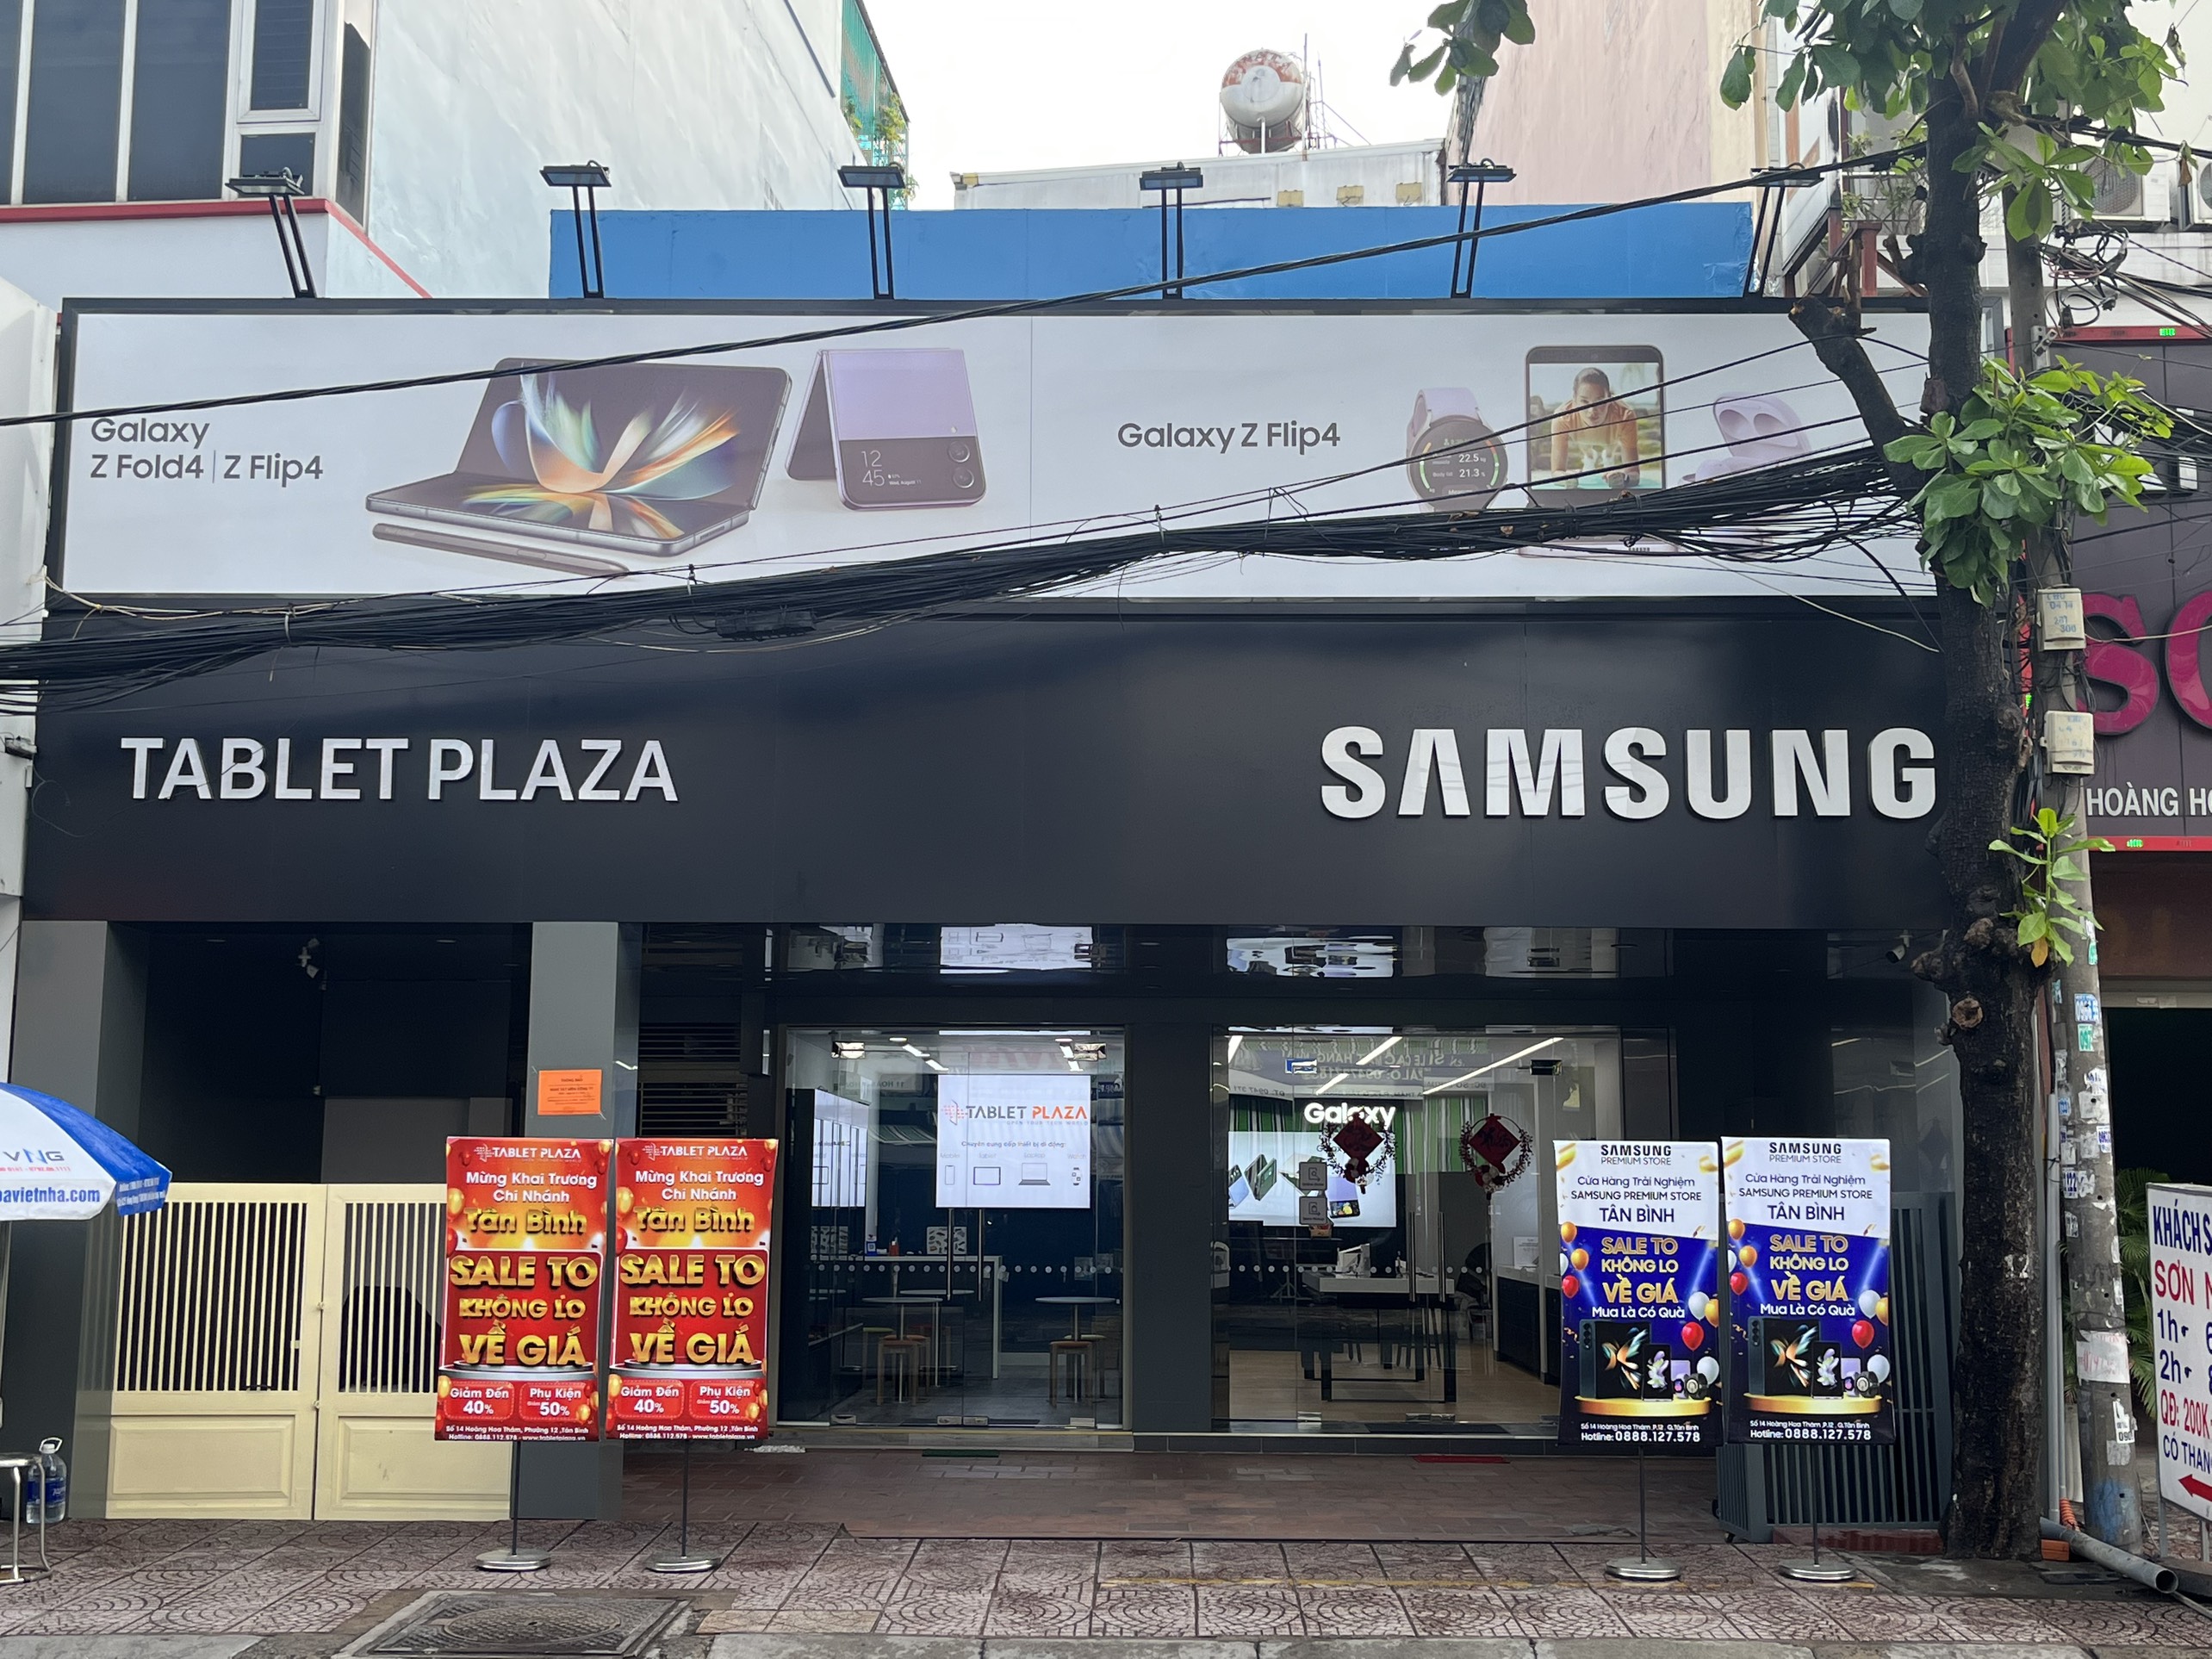 Tablet Plaza - Địa điểm bán điện thoại, Tablet, Laptop giá rẻ